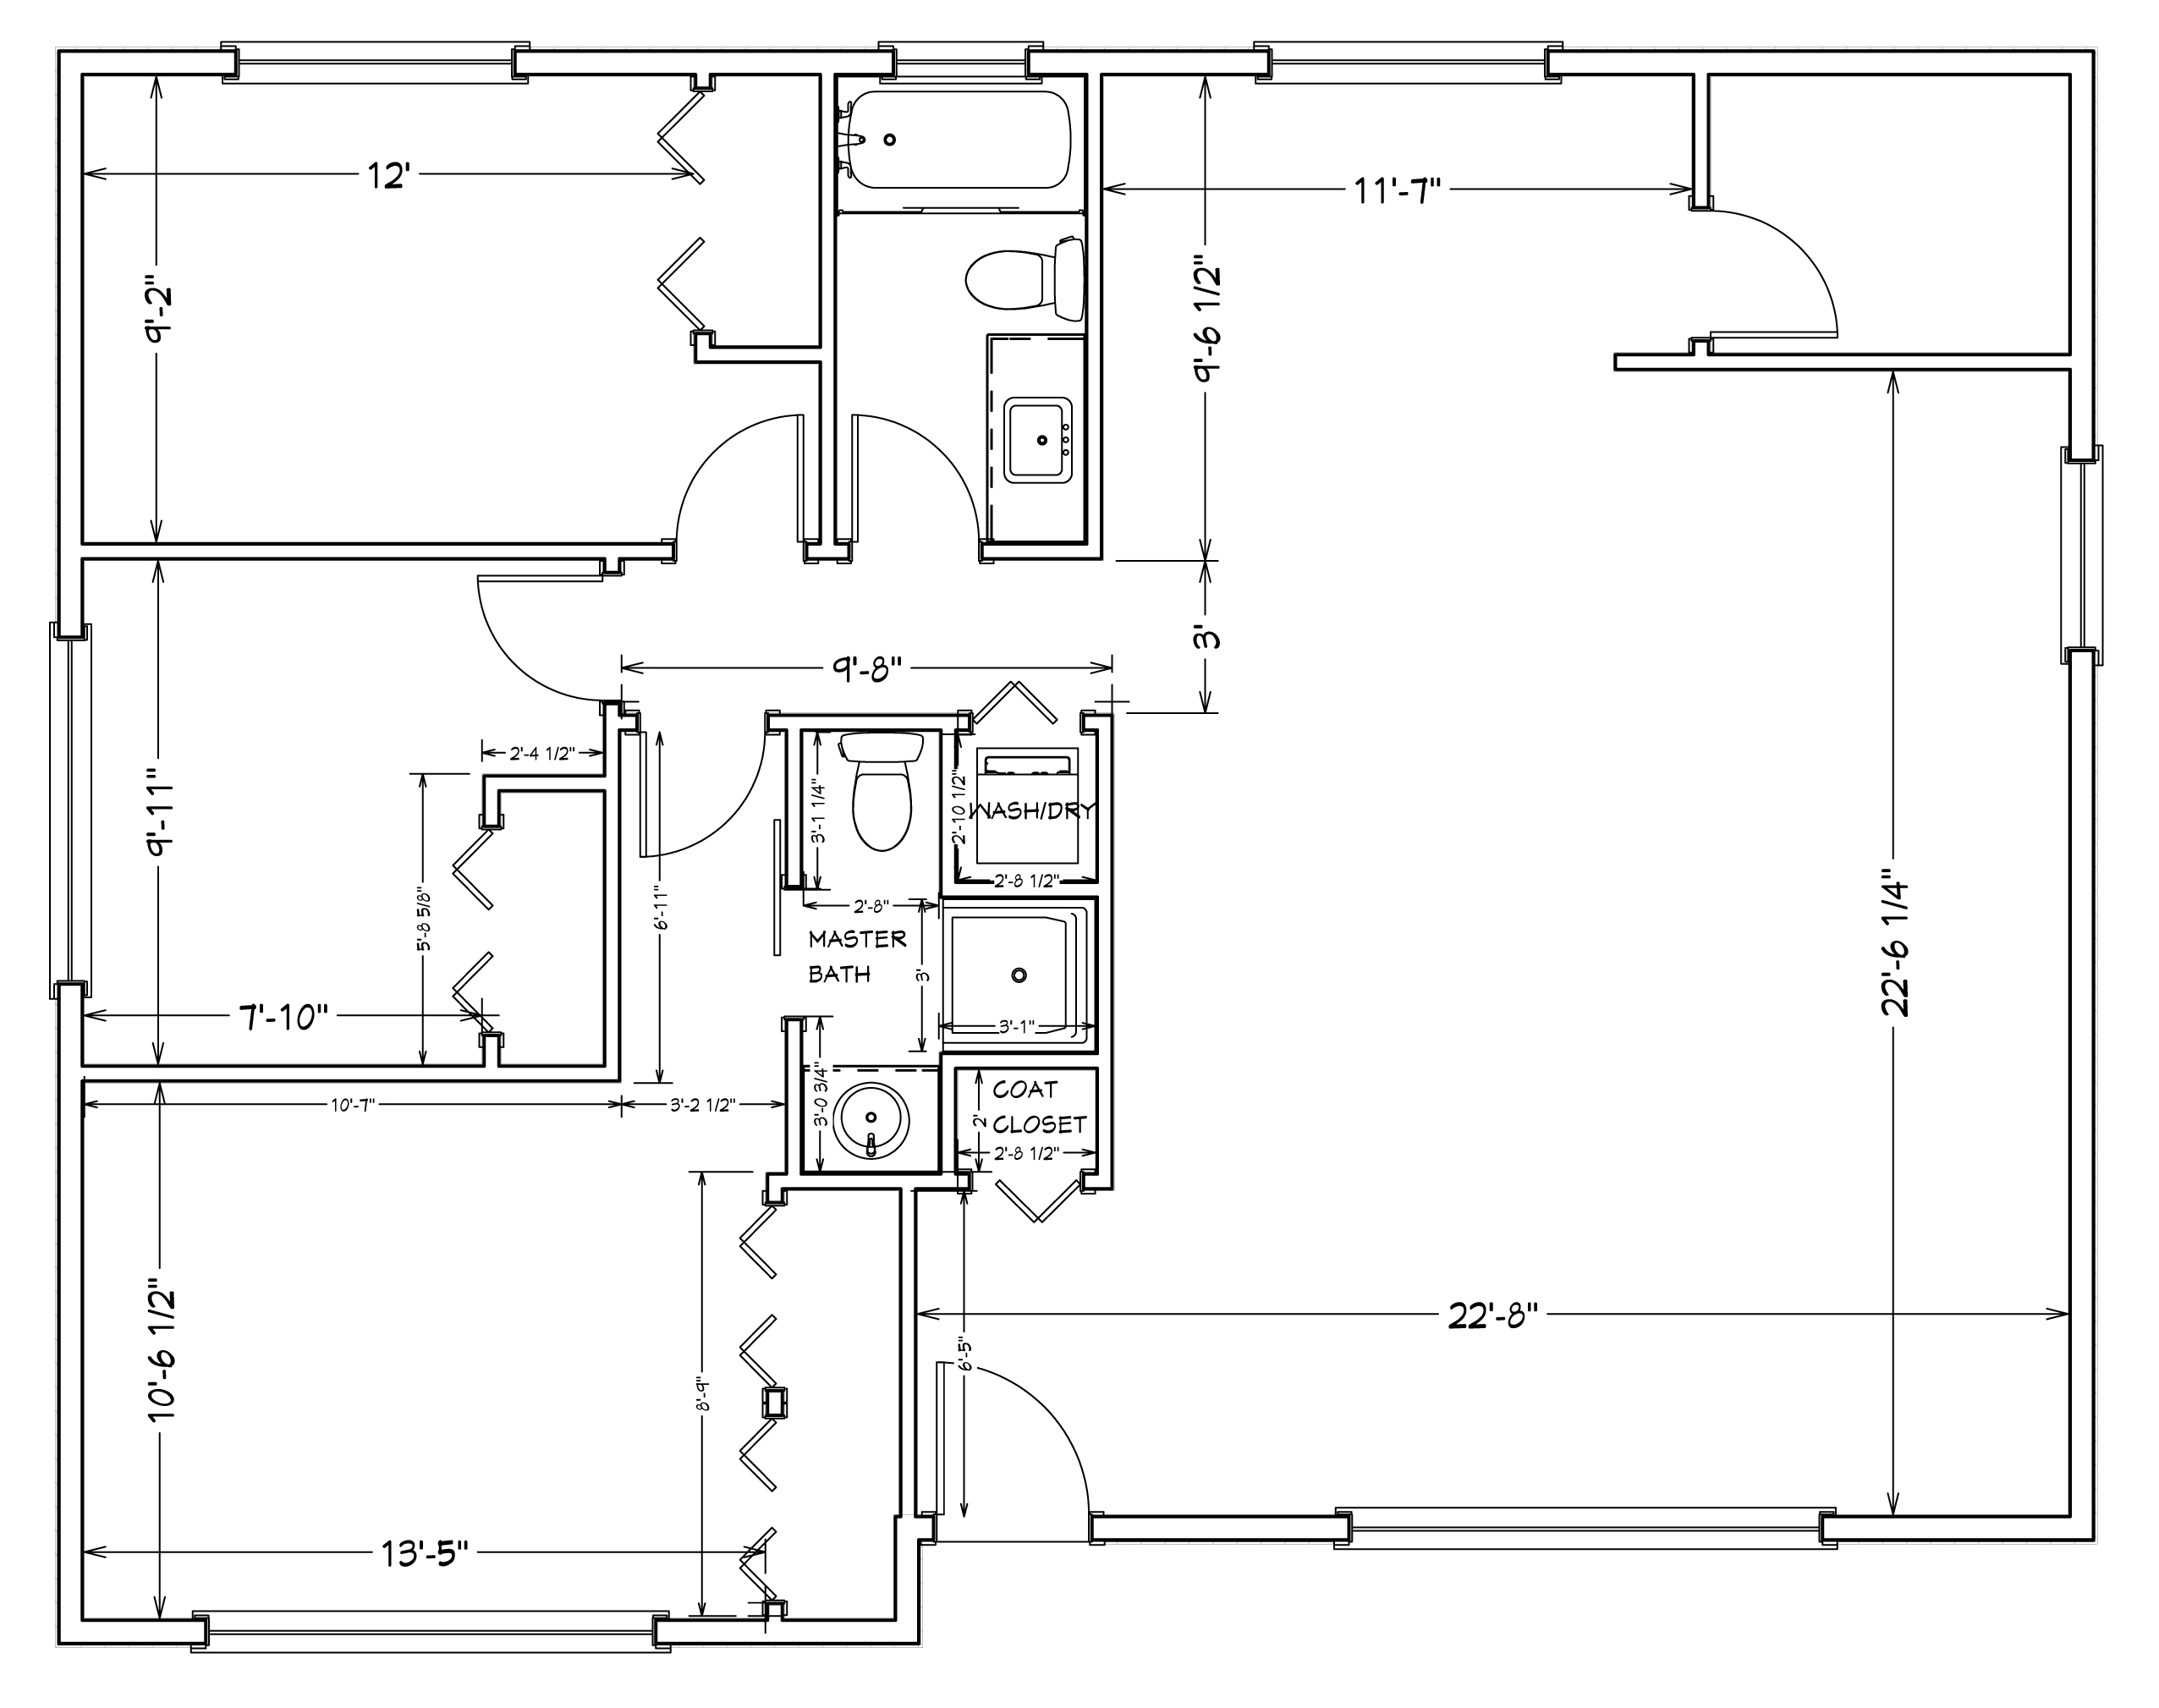 Detailed main floor layout idea